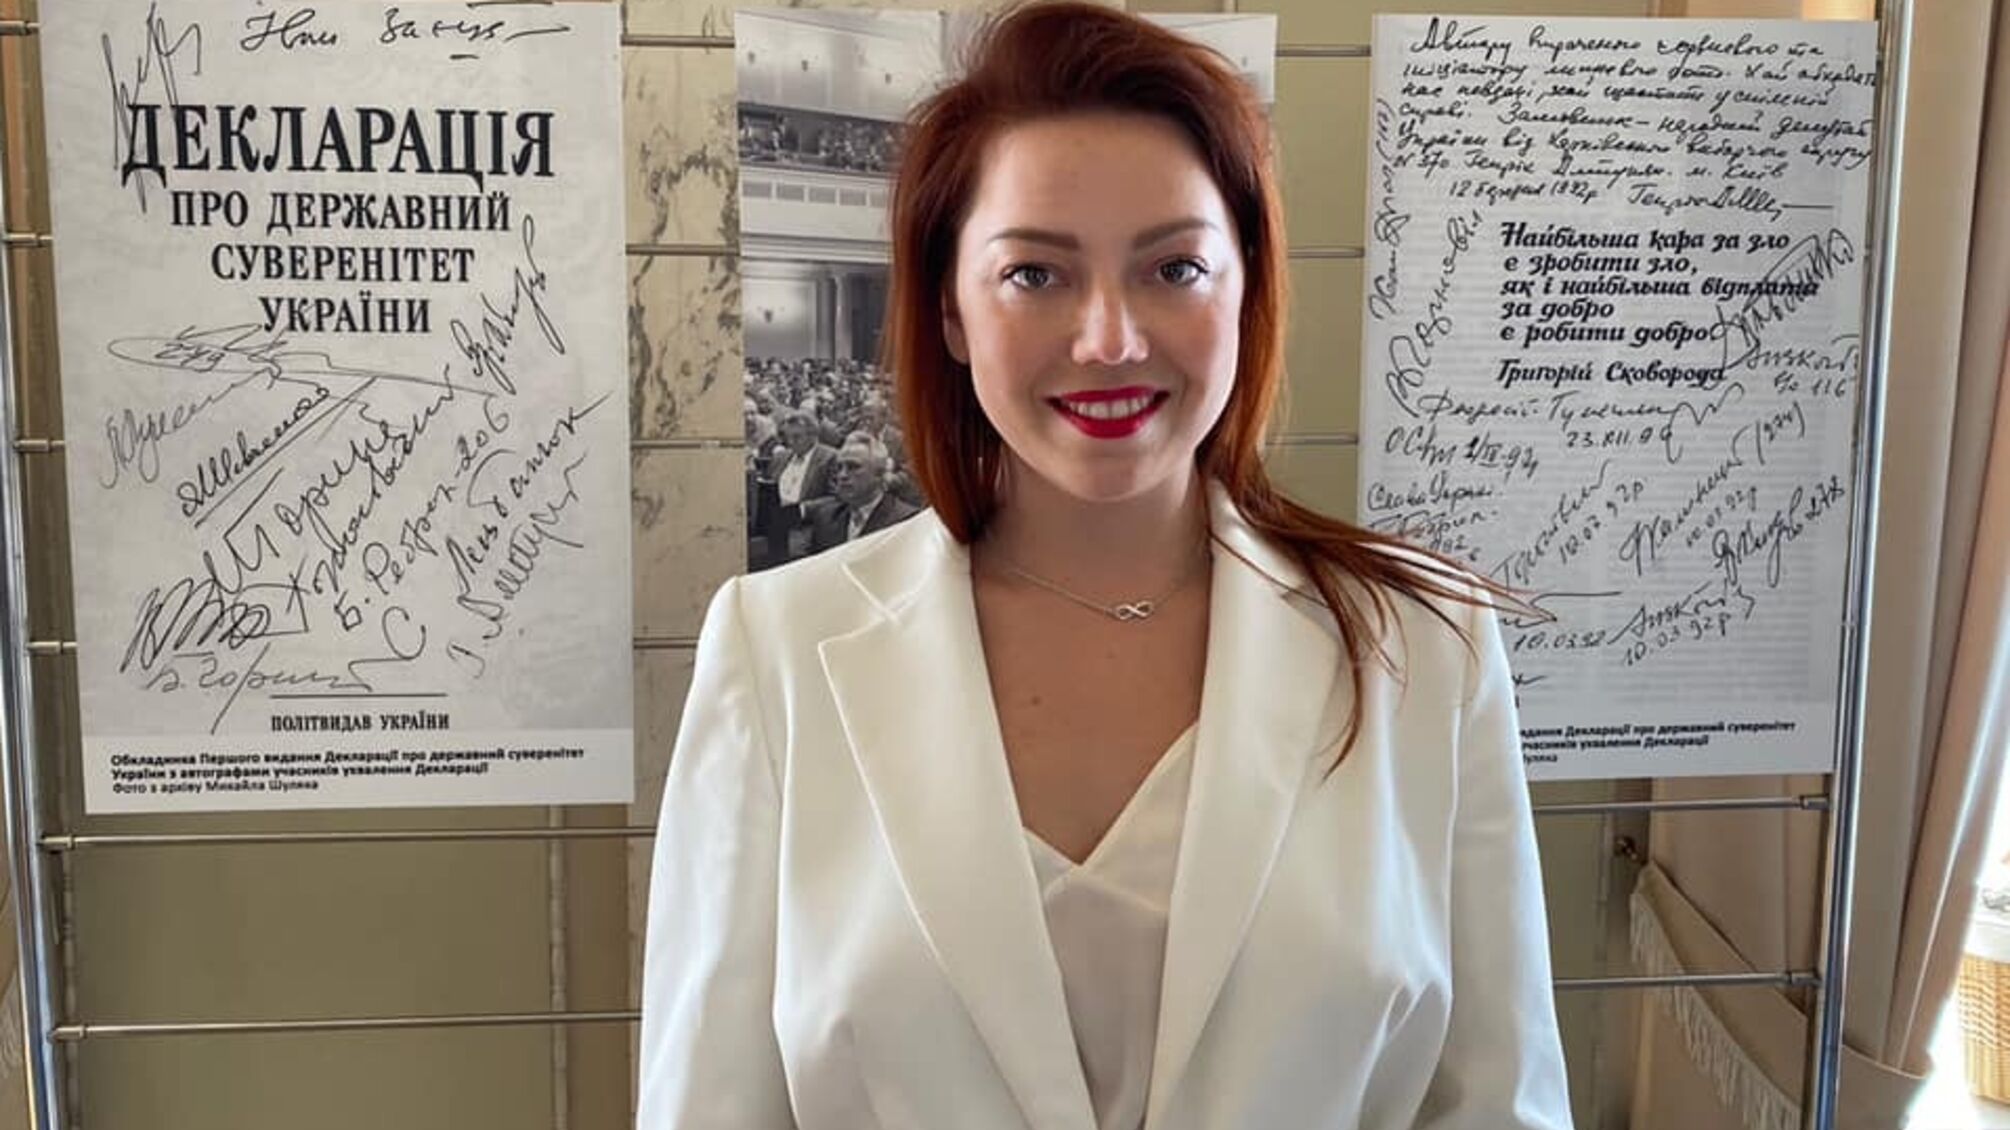 Нардепка из 'Батькивщины' выиграла аутфит в две зарплаты на Форуме молодых политиков мира